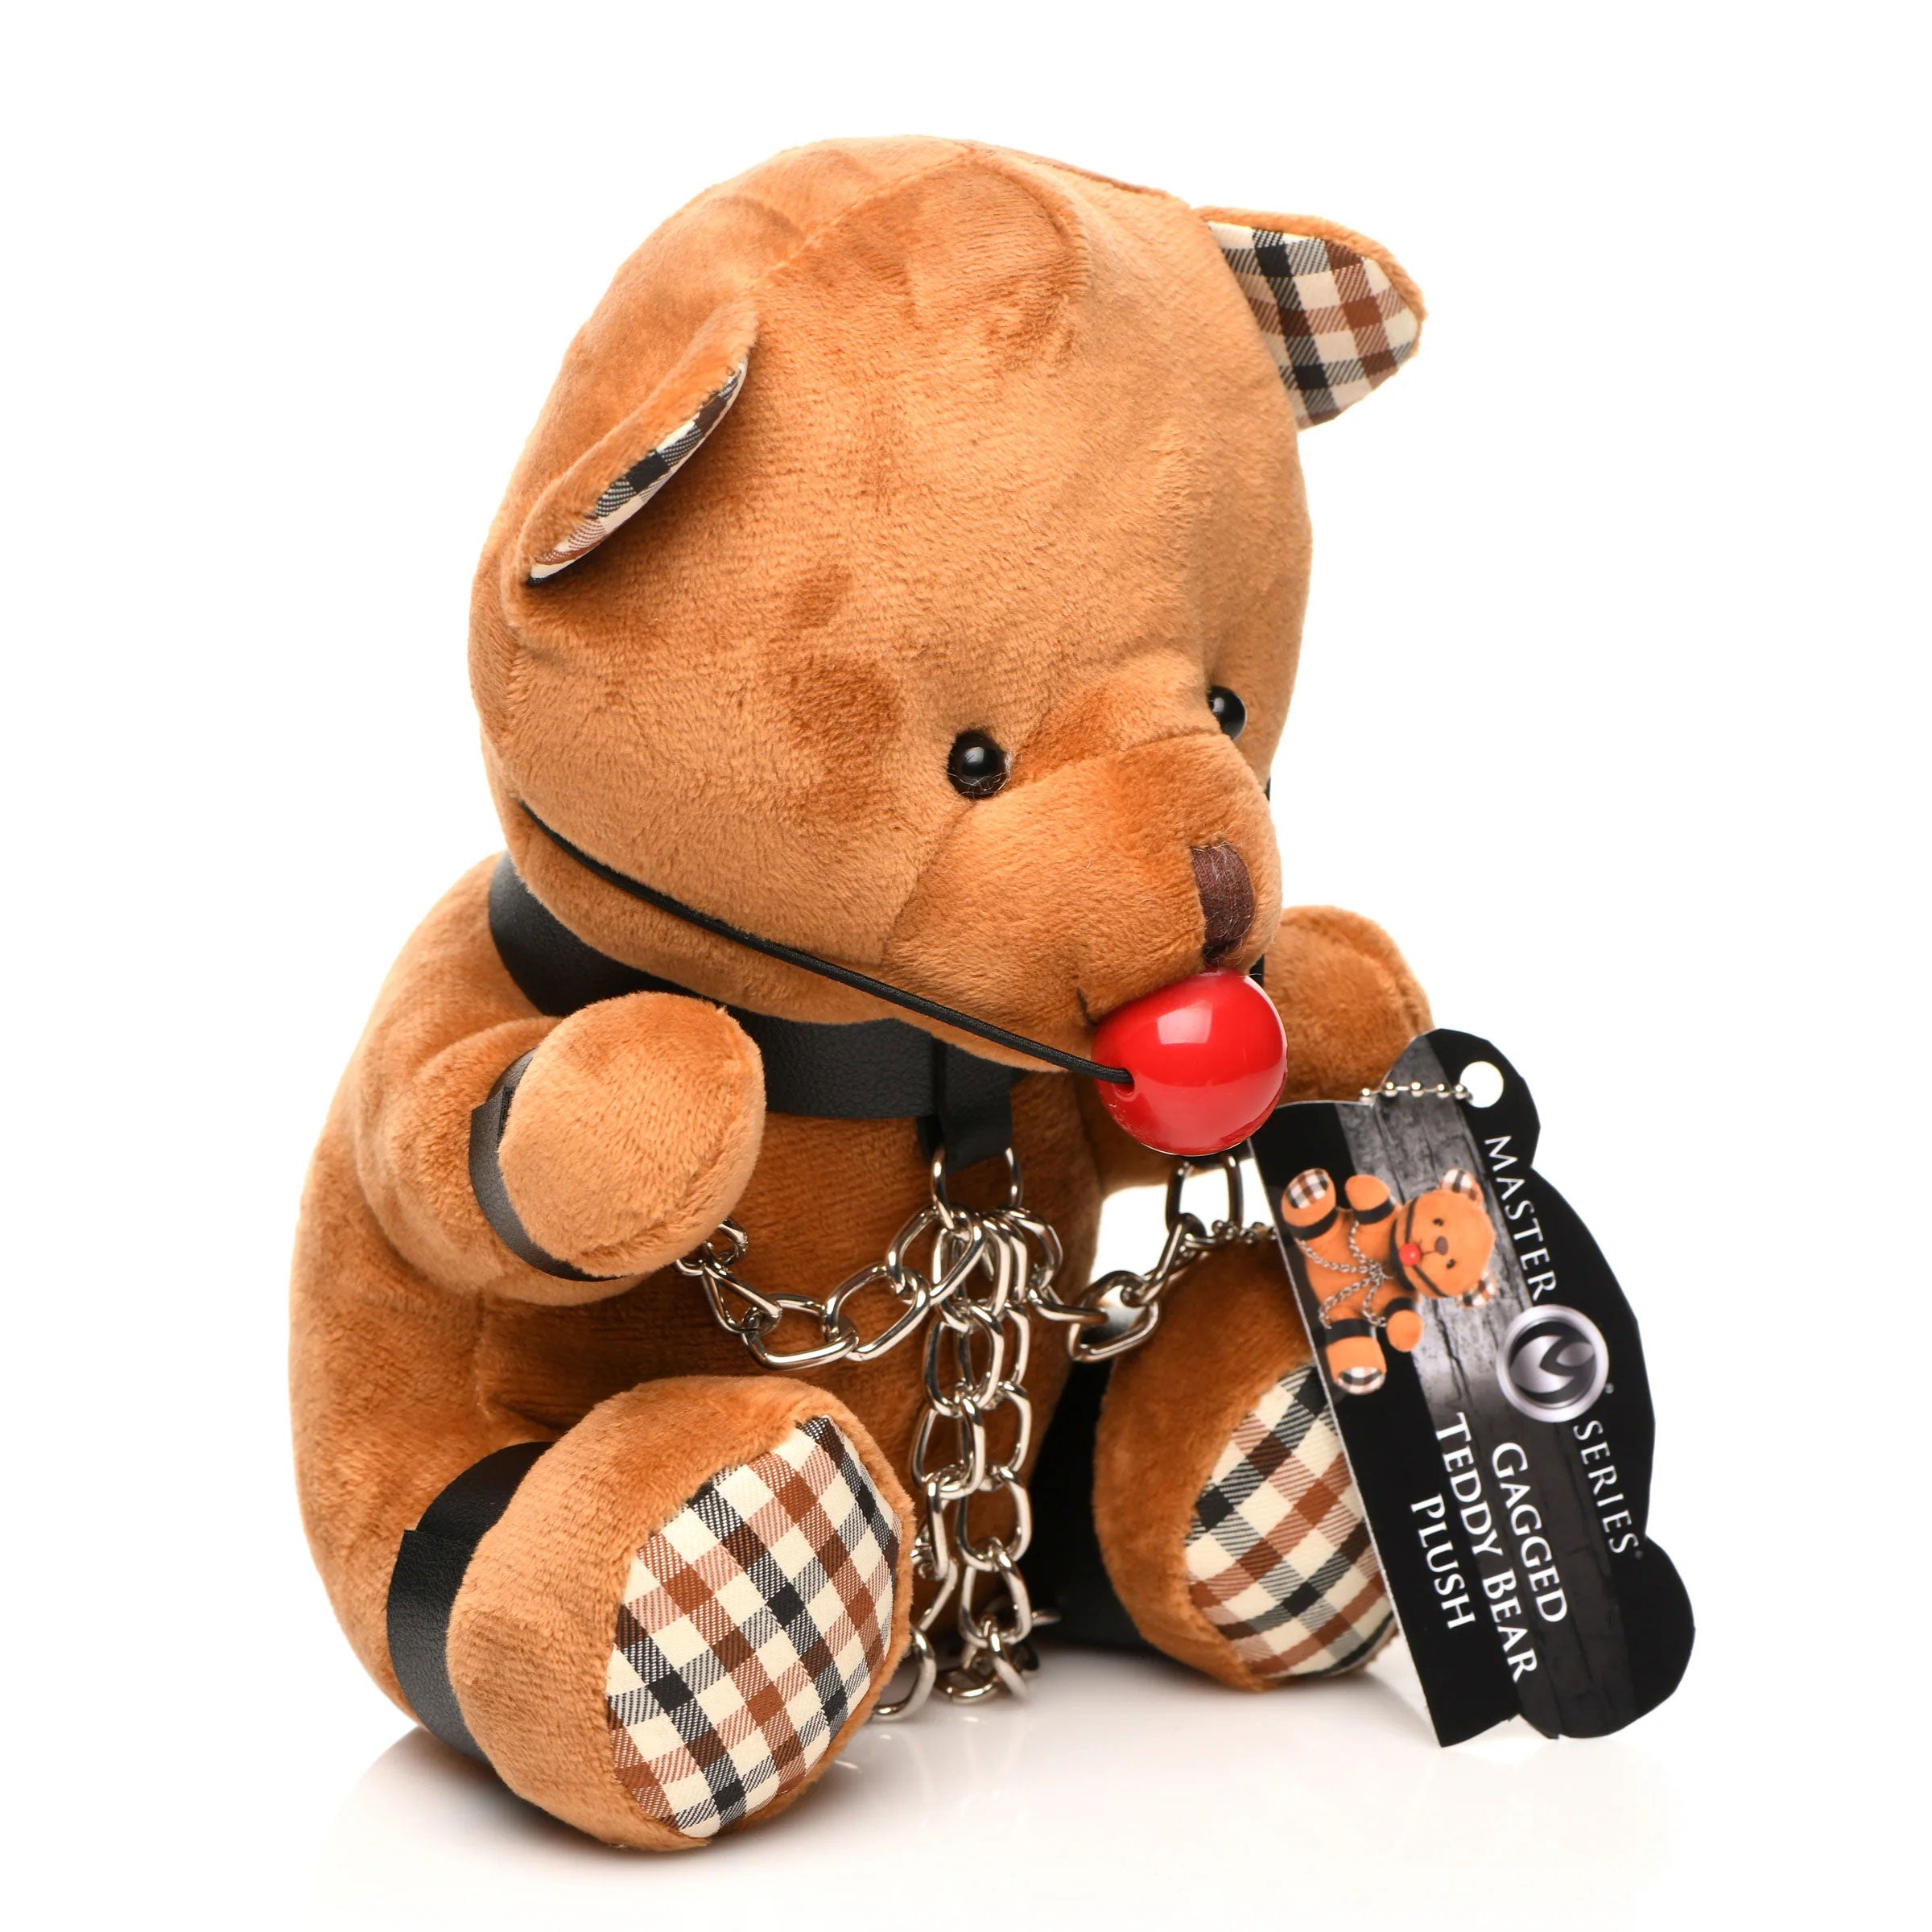 Gagged Teddy Bear Plush-5